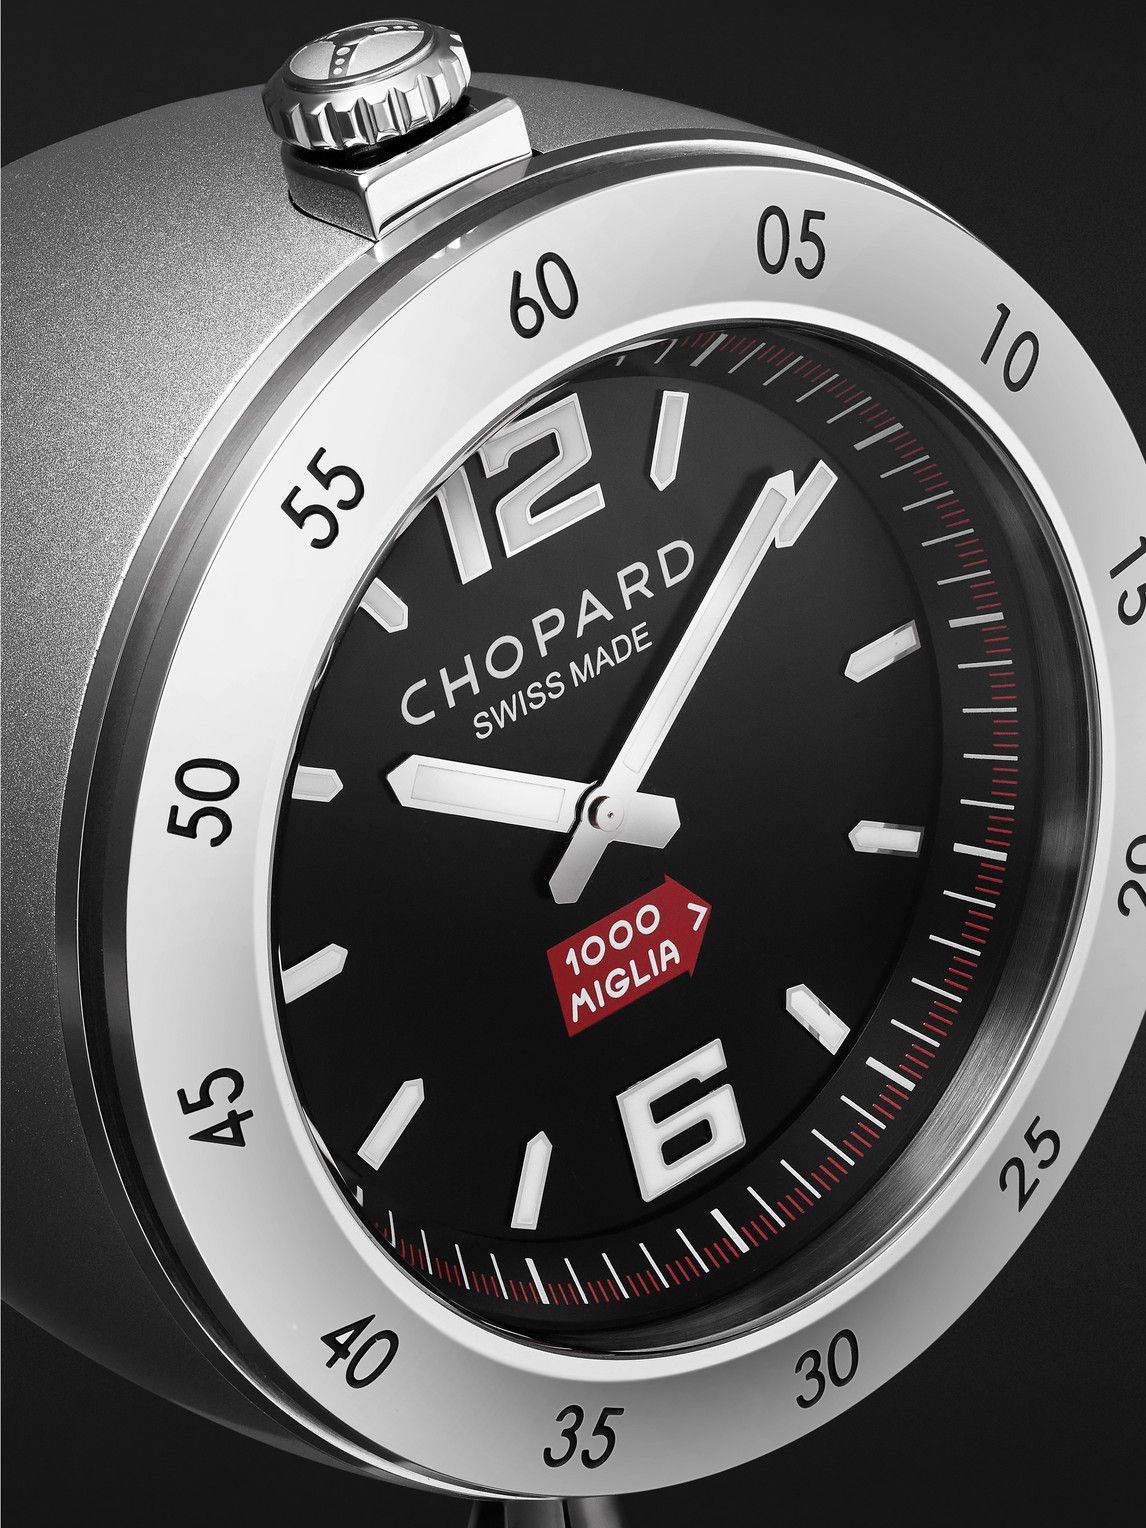 Chopard Vintage Racing Table Clock - Black